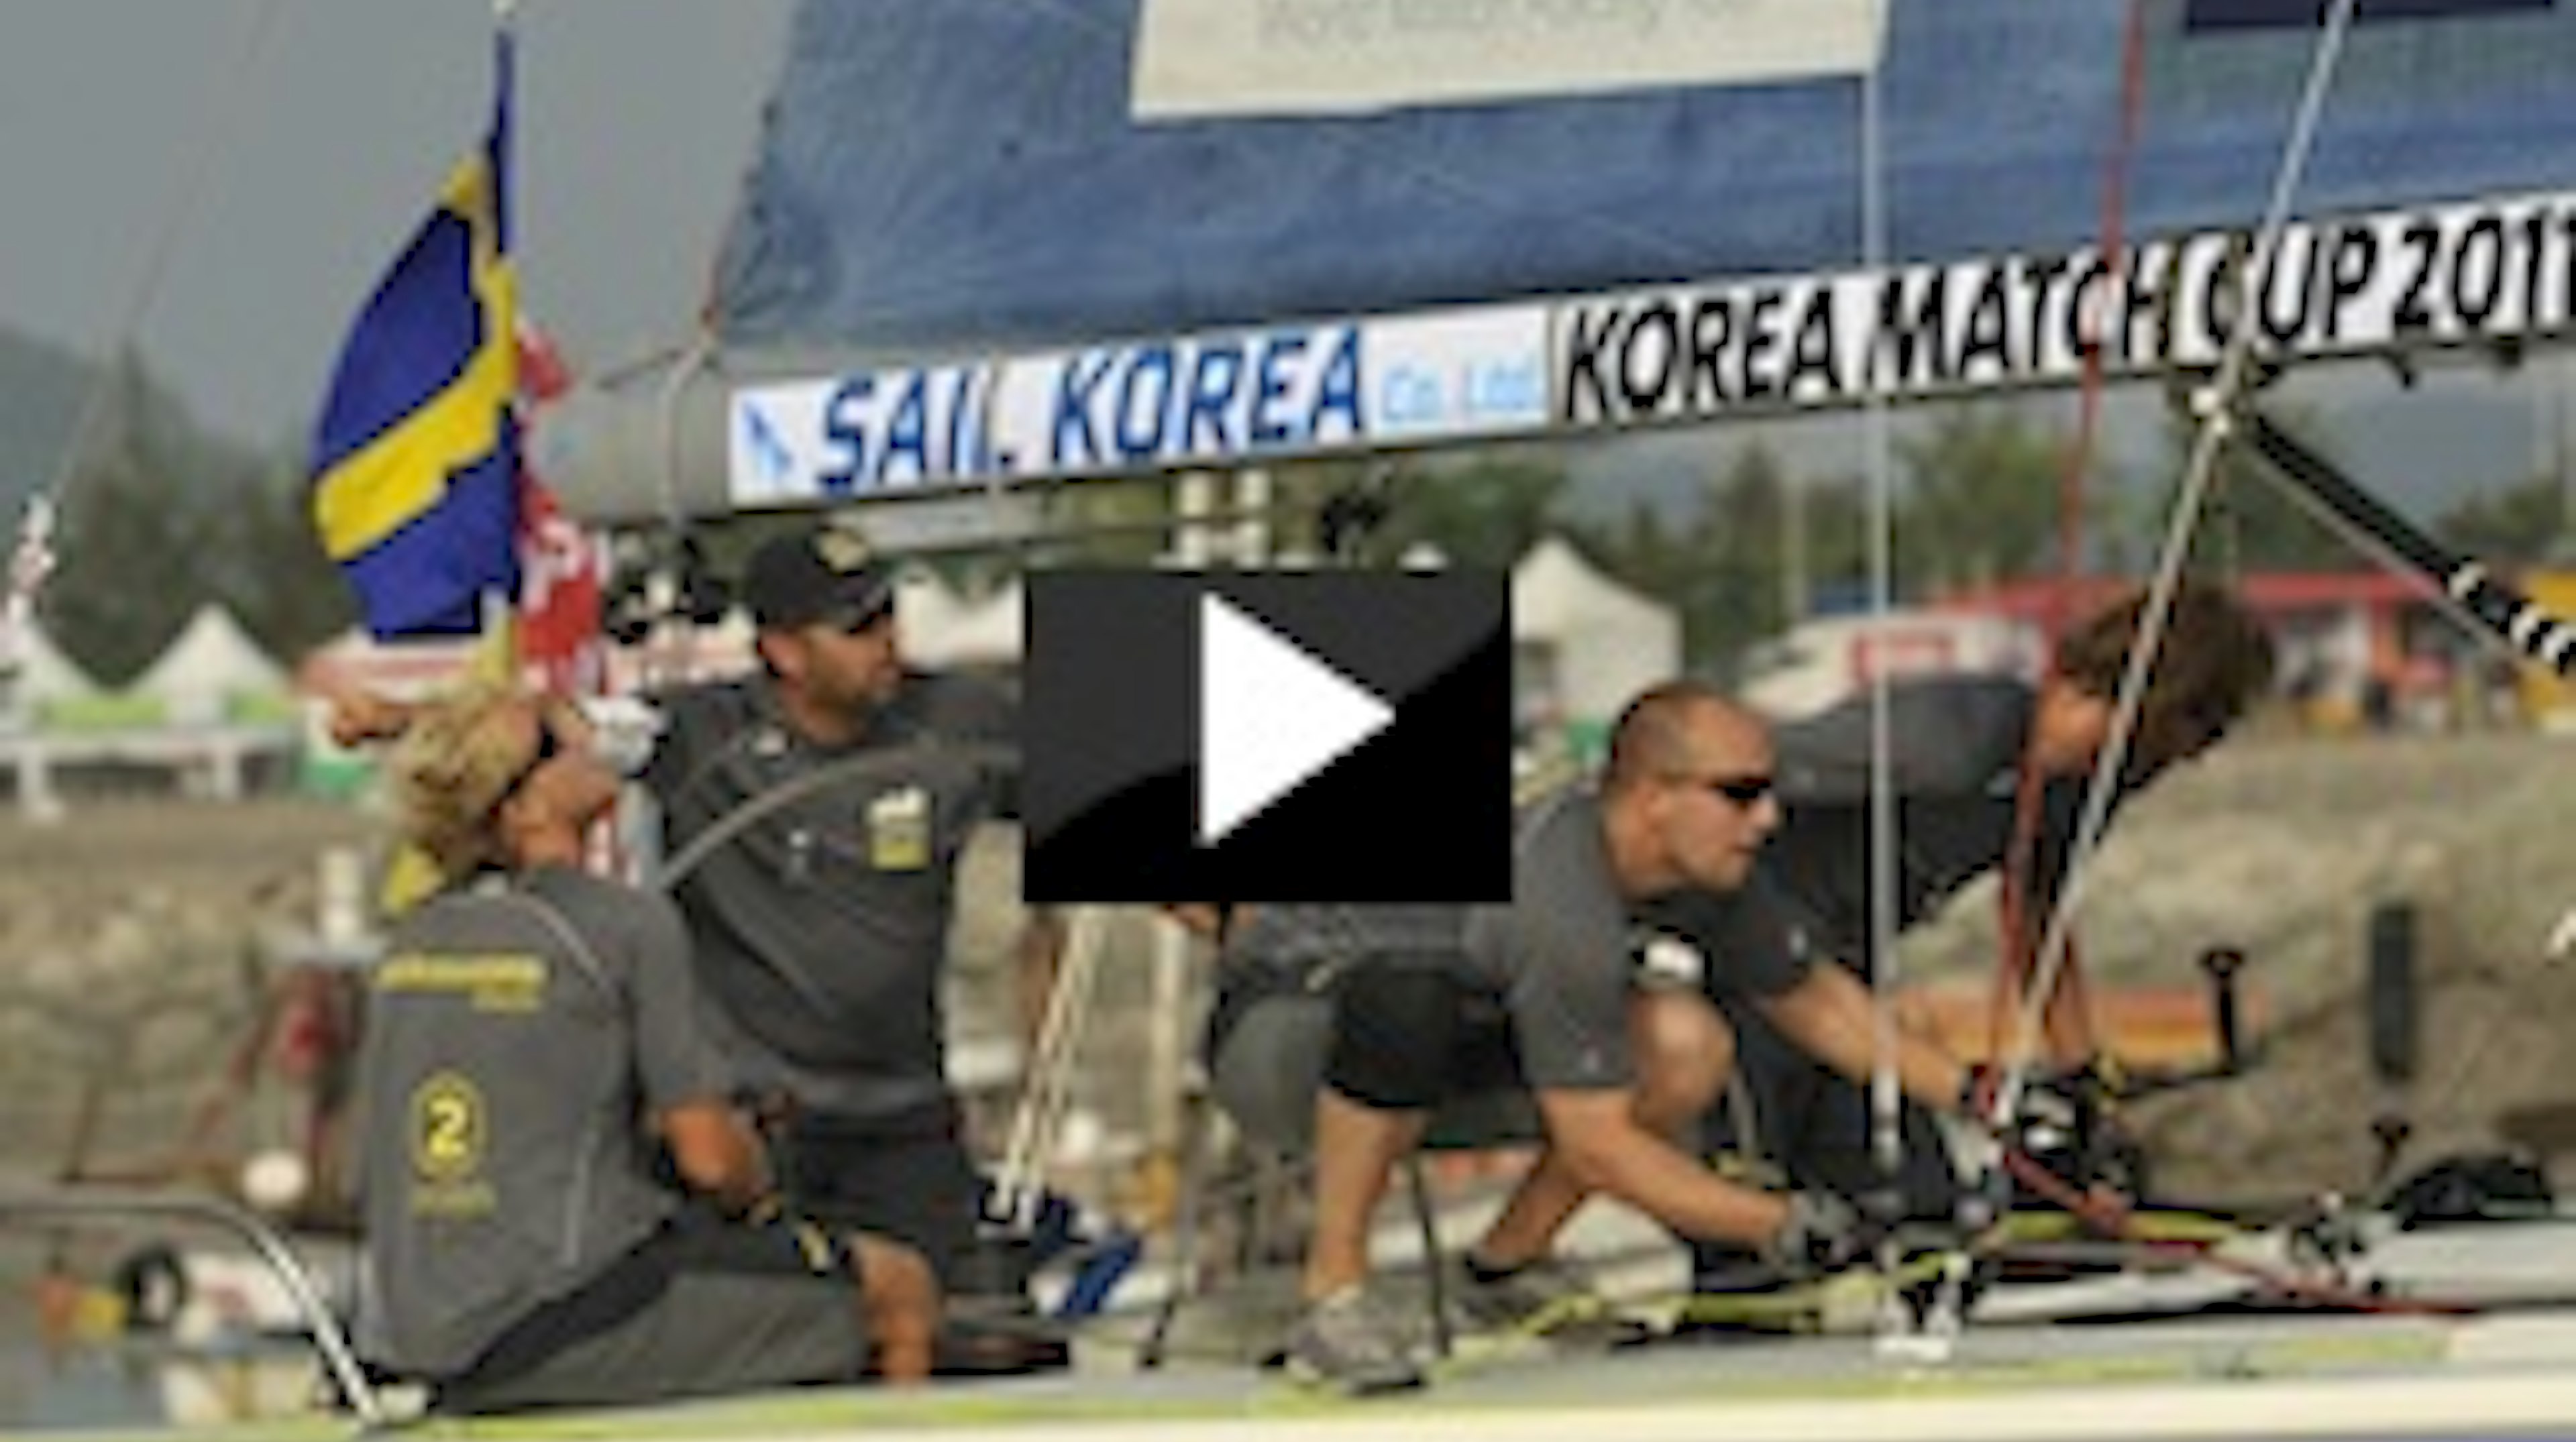 Hansen vinner världscuptävling i Korea